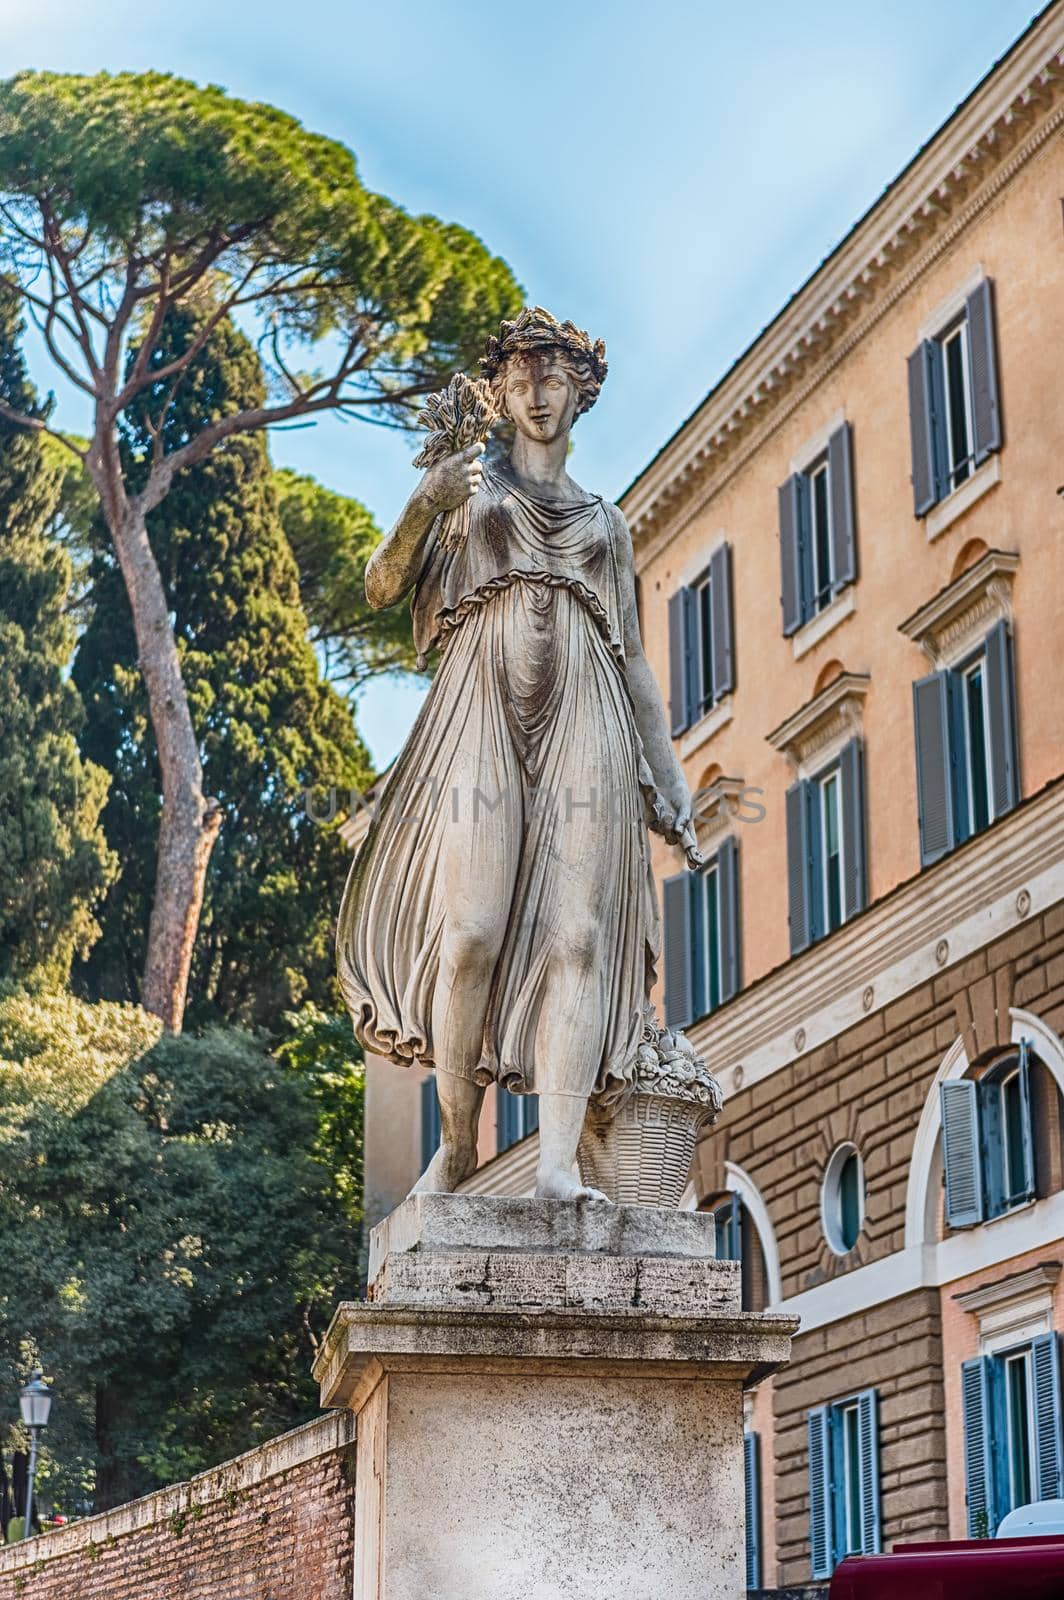 Statue in the iconic Piazza del Popolo, Rome, Italy by marcorubino